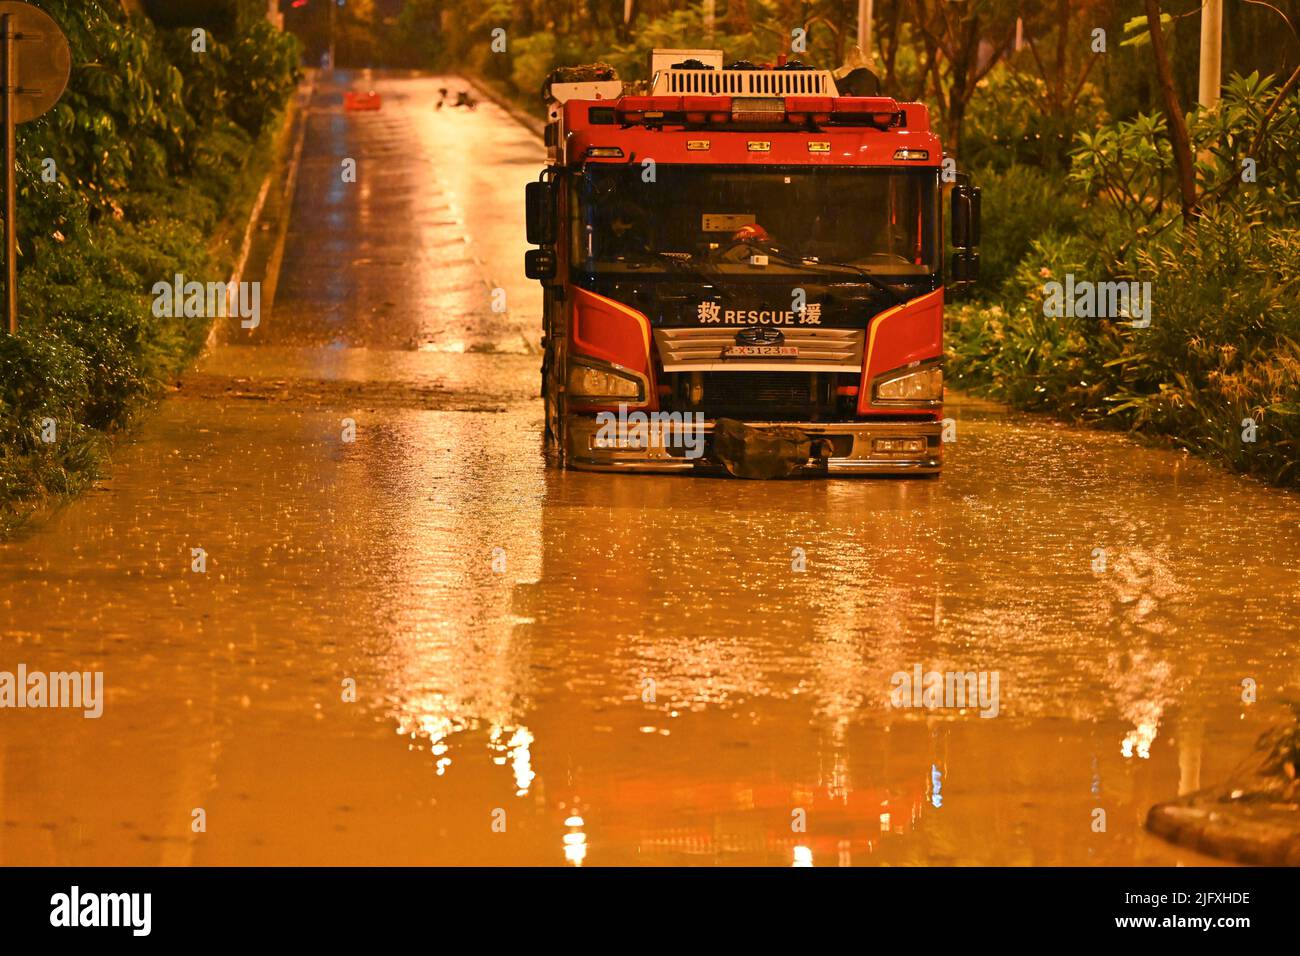 NANNING, CINA - 5 LUGLIO 2022 - i veicoli sono sommersi nell'acqua piovana a Nanning, nella regione autonoma di Guangxi Zhuang, Cina meridionale, 5 luglio 2022. La pioggia Foto Stock